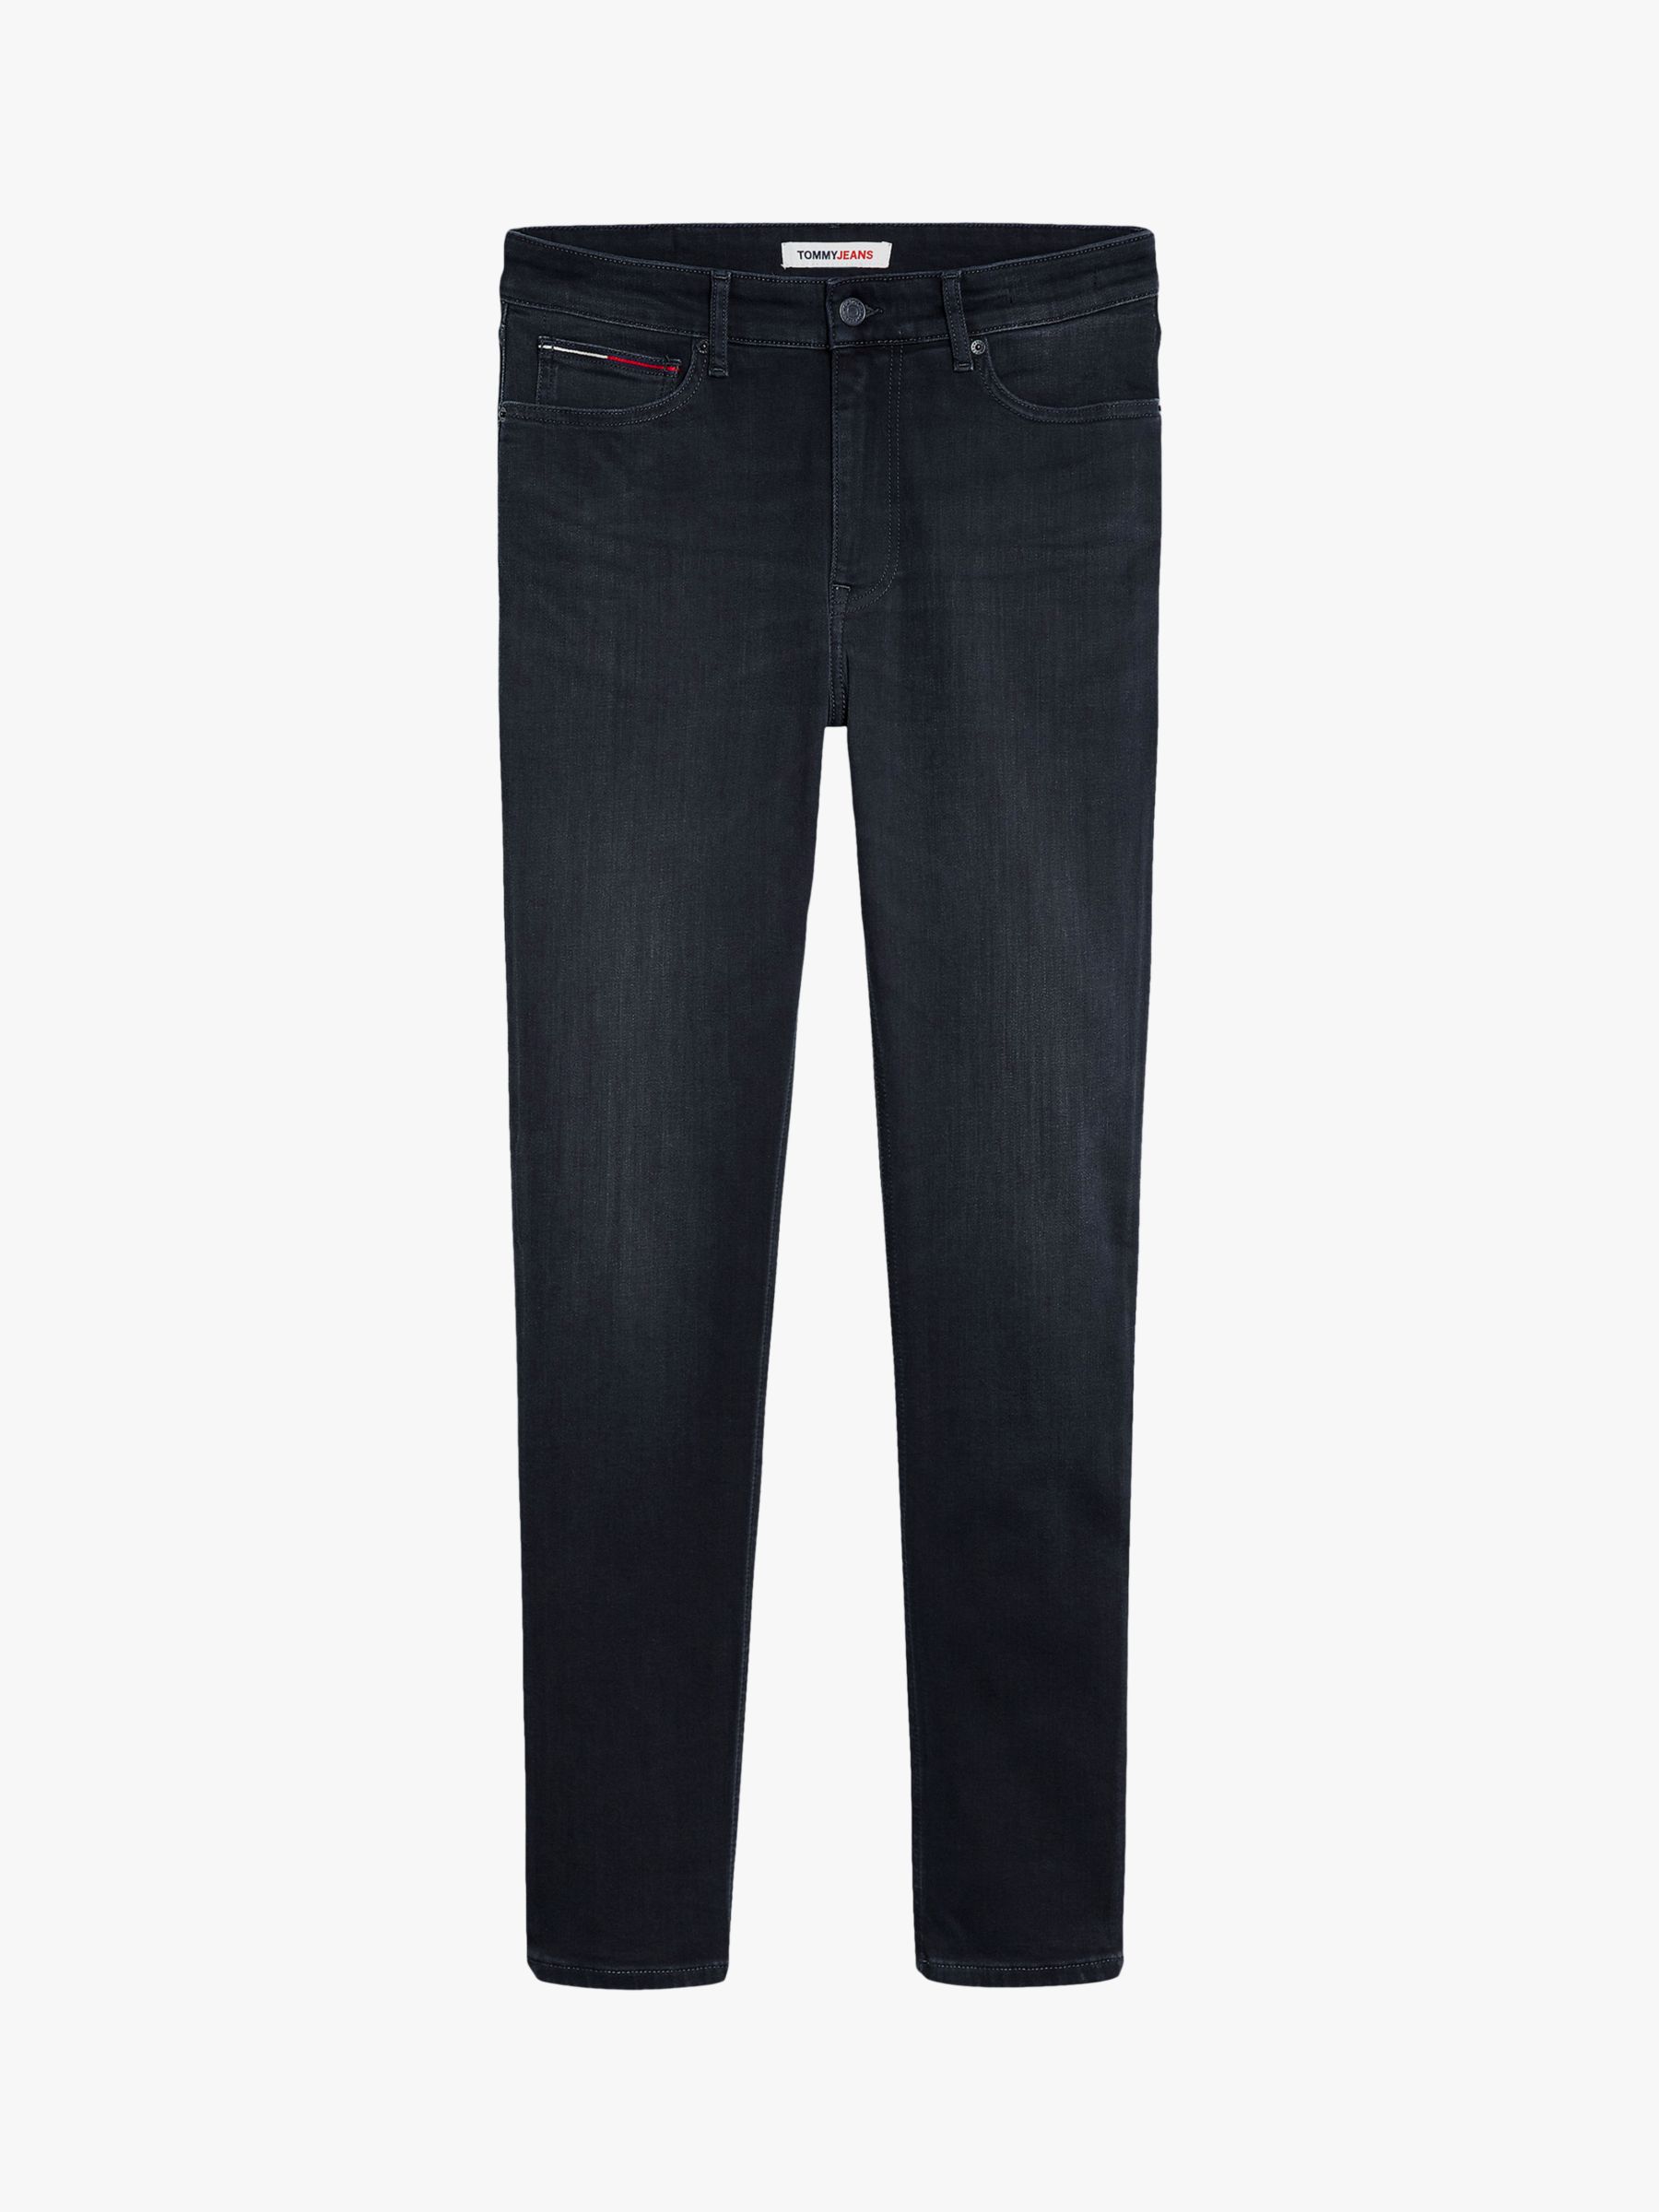 Buy Hilfiger Denim Jacob Skinny Fit Jeans, Dynamic Black Online at johnlewis.com